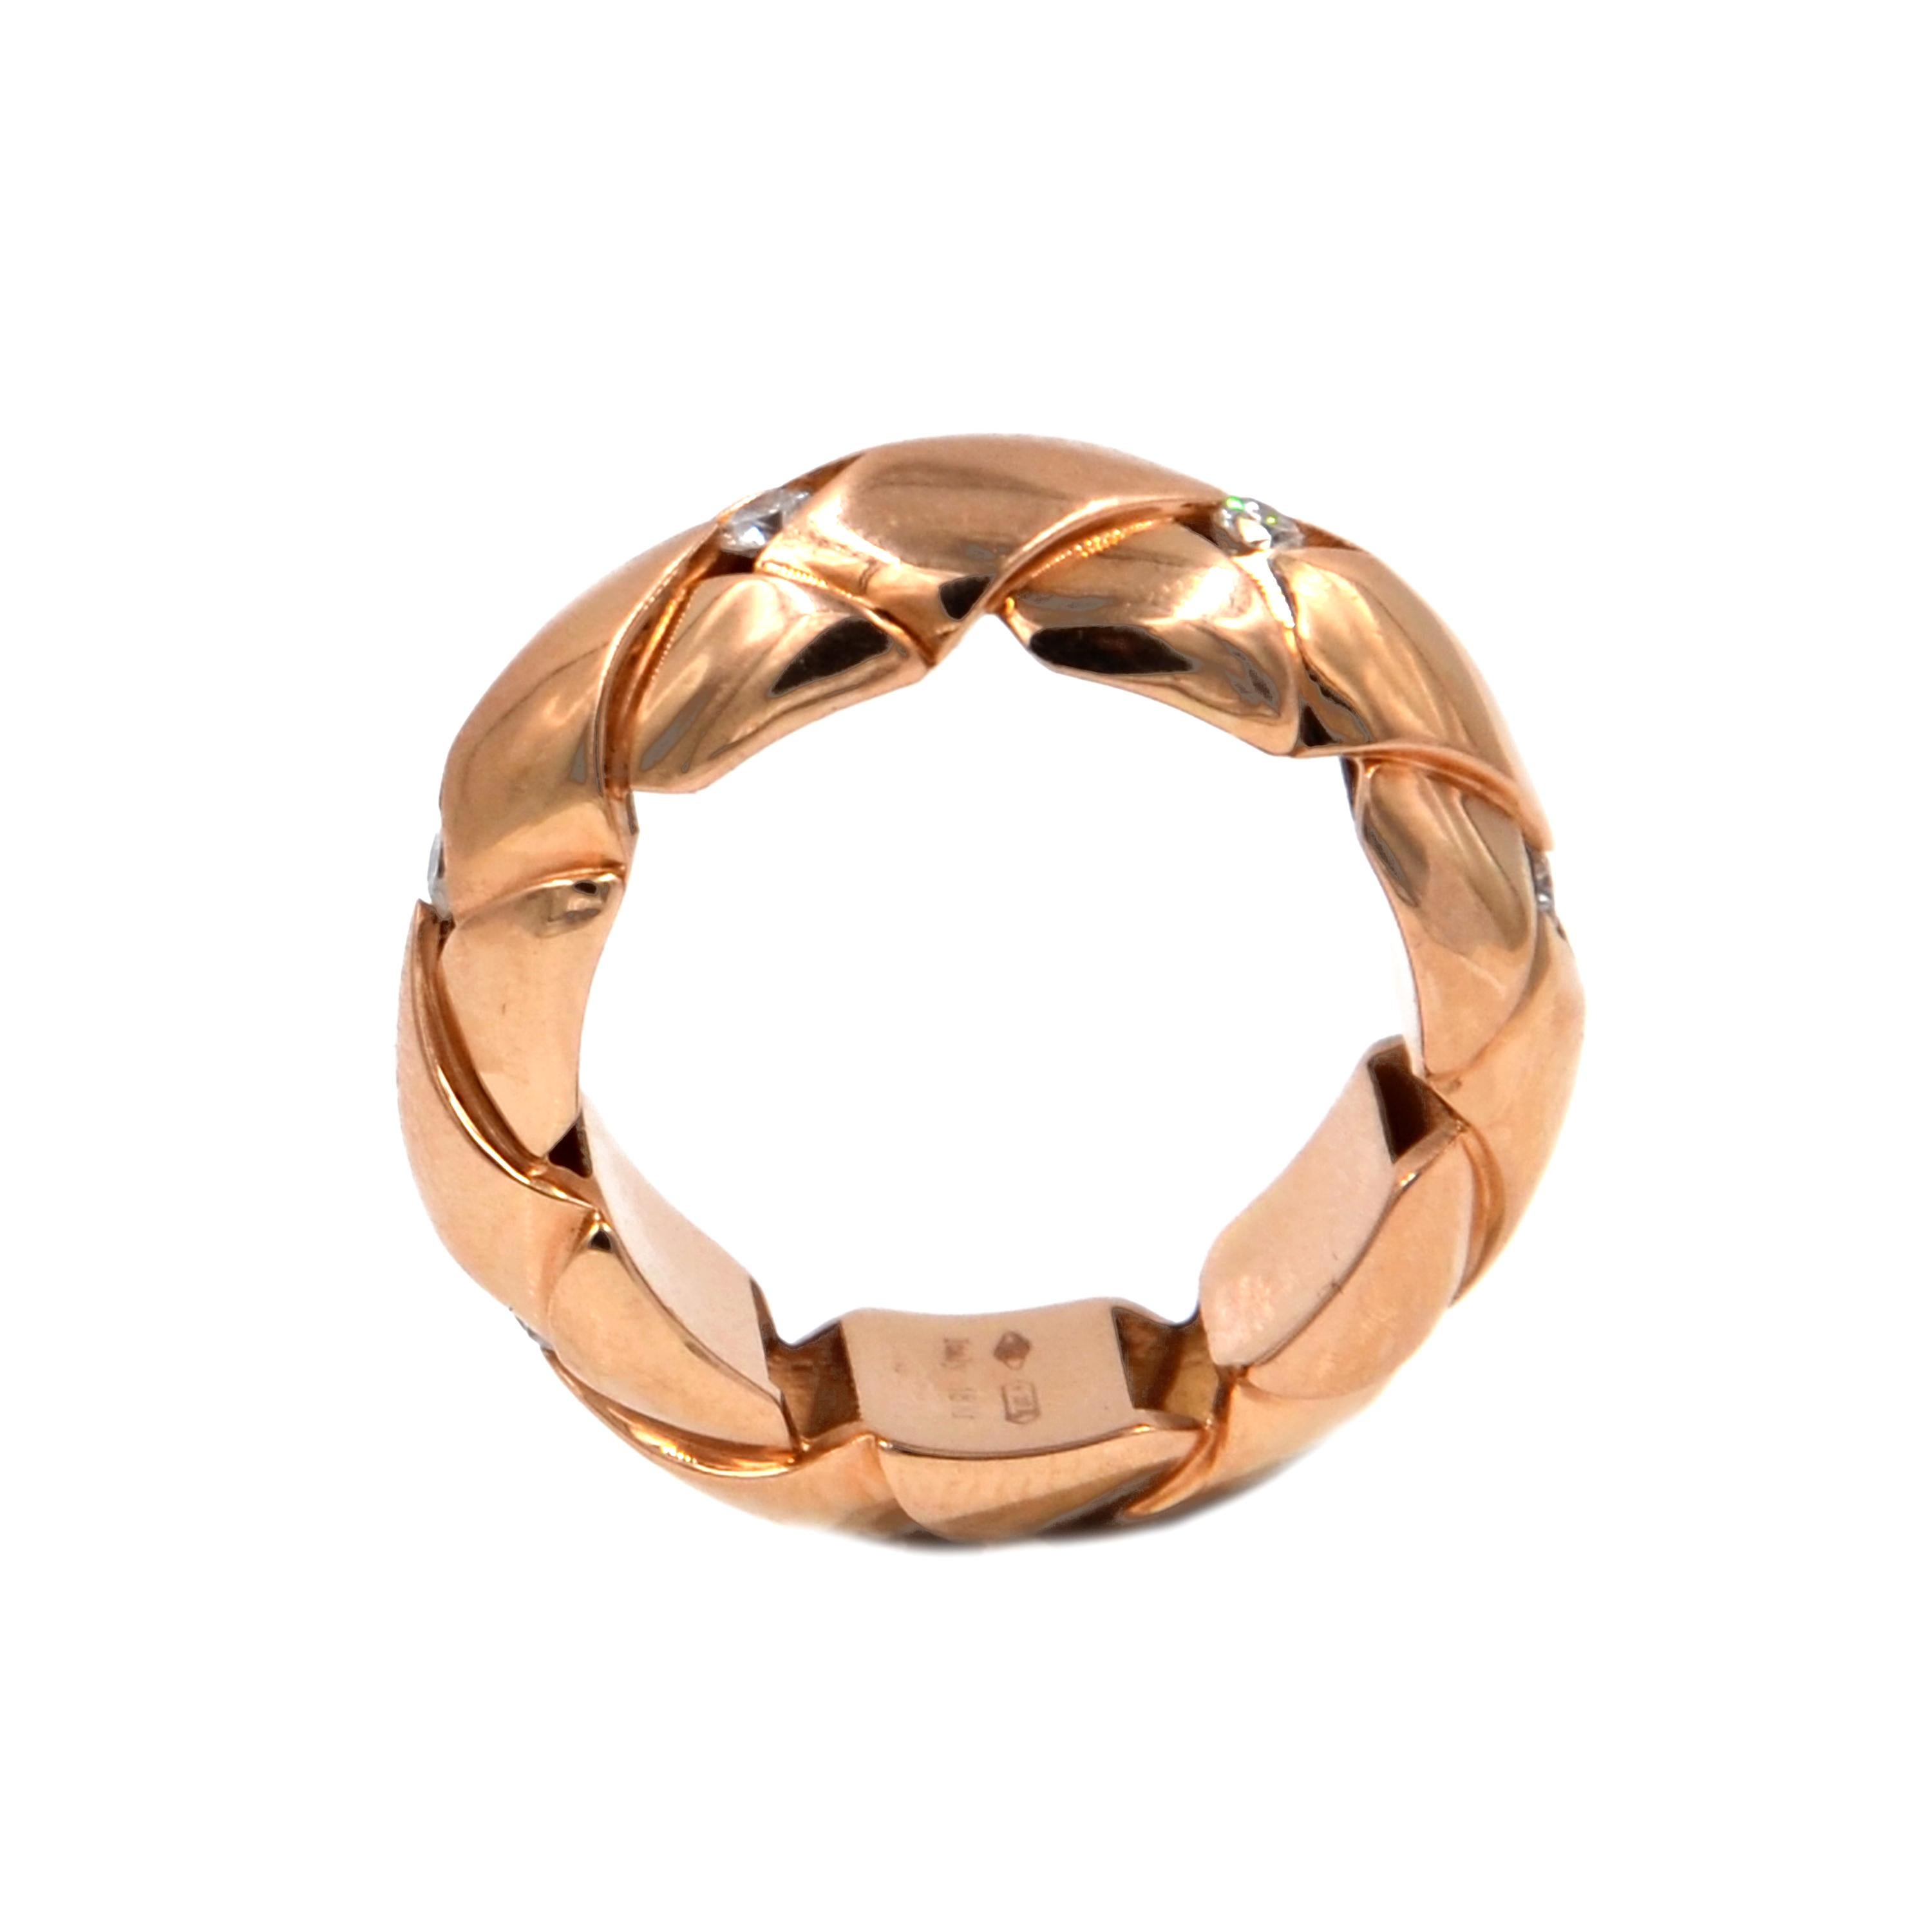 Round Cut 18 Karat Rose Gold Diamond Garavelli Ring